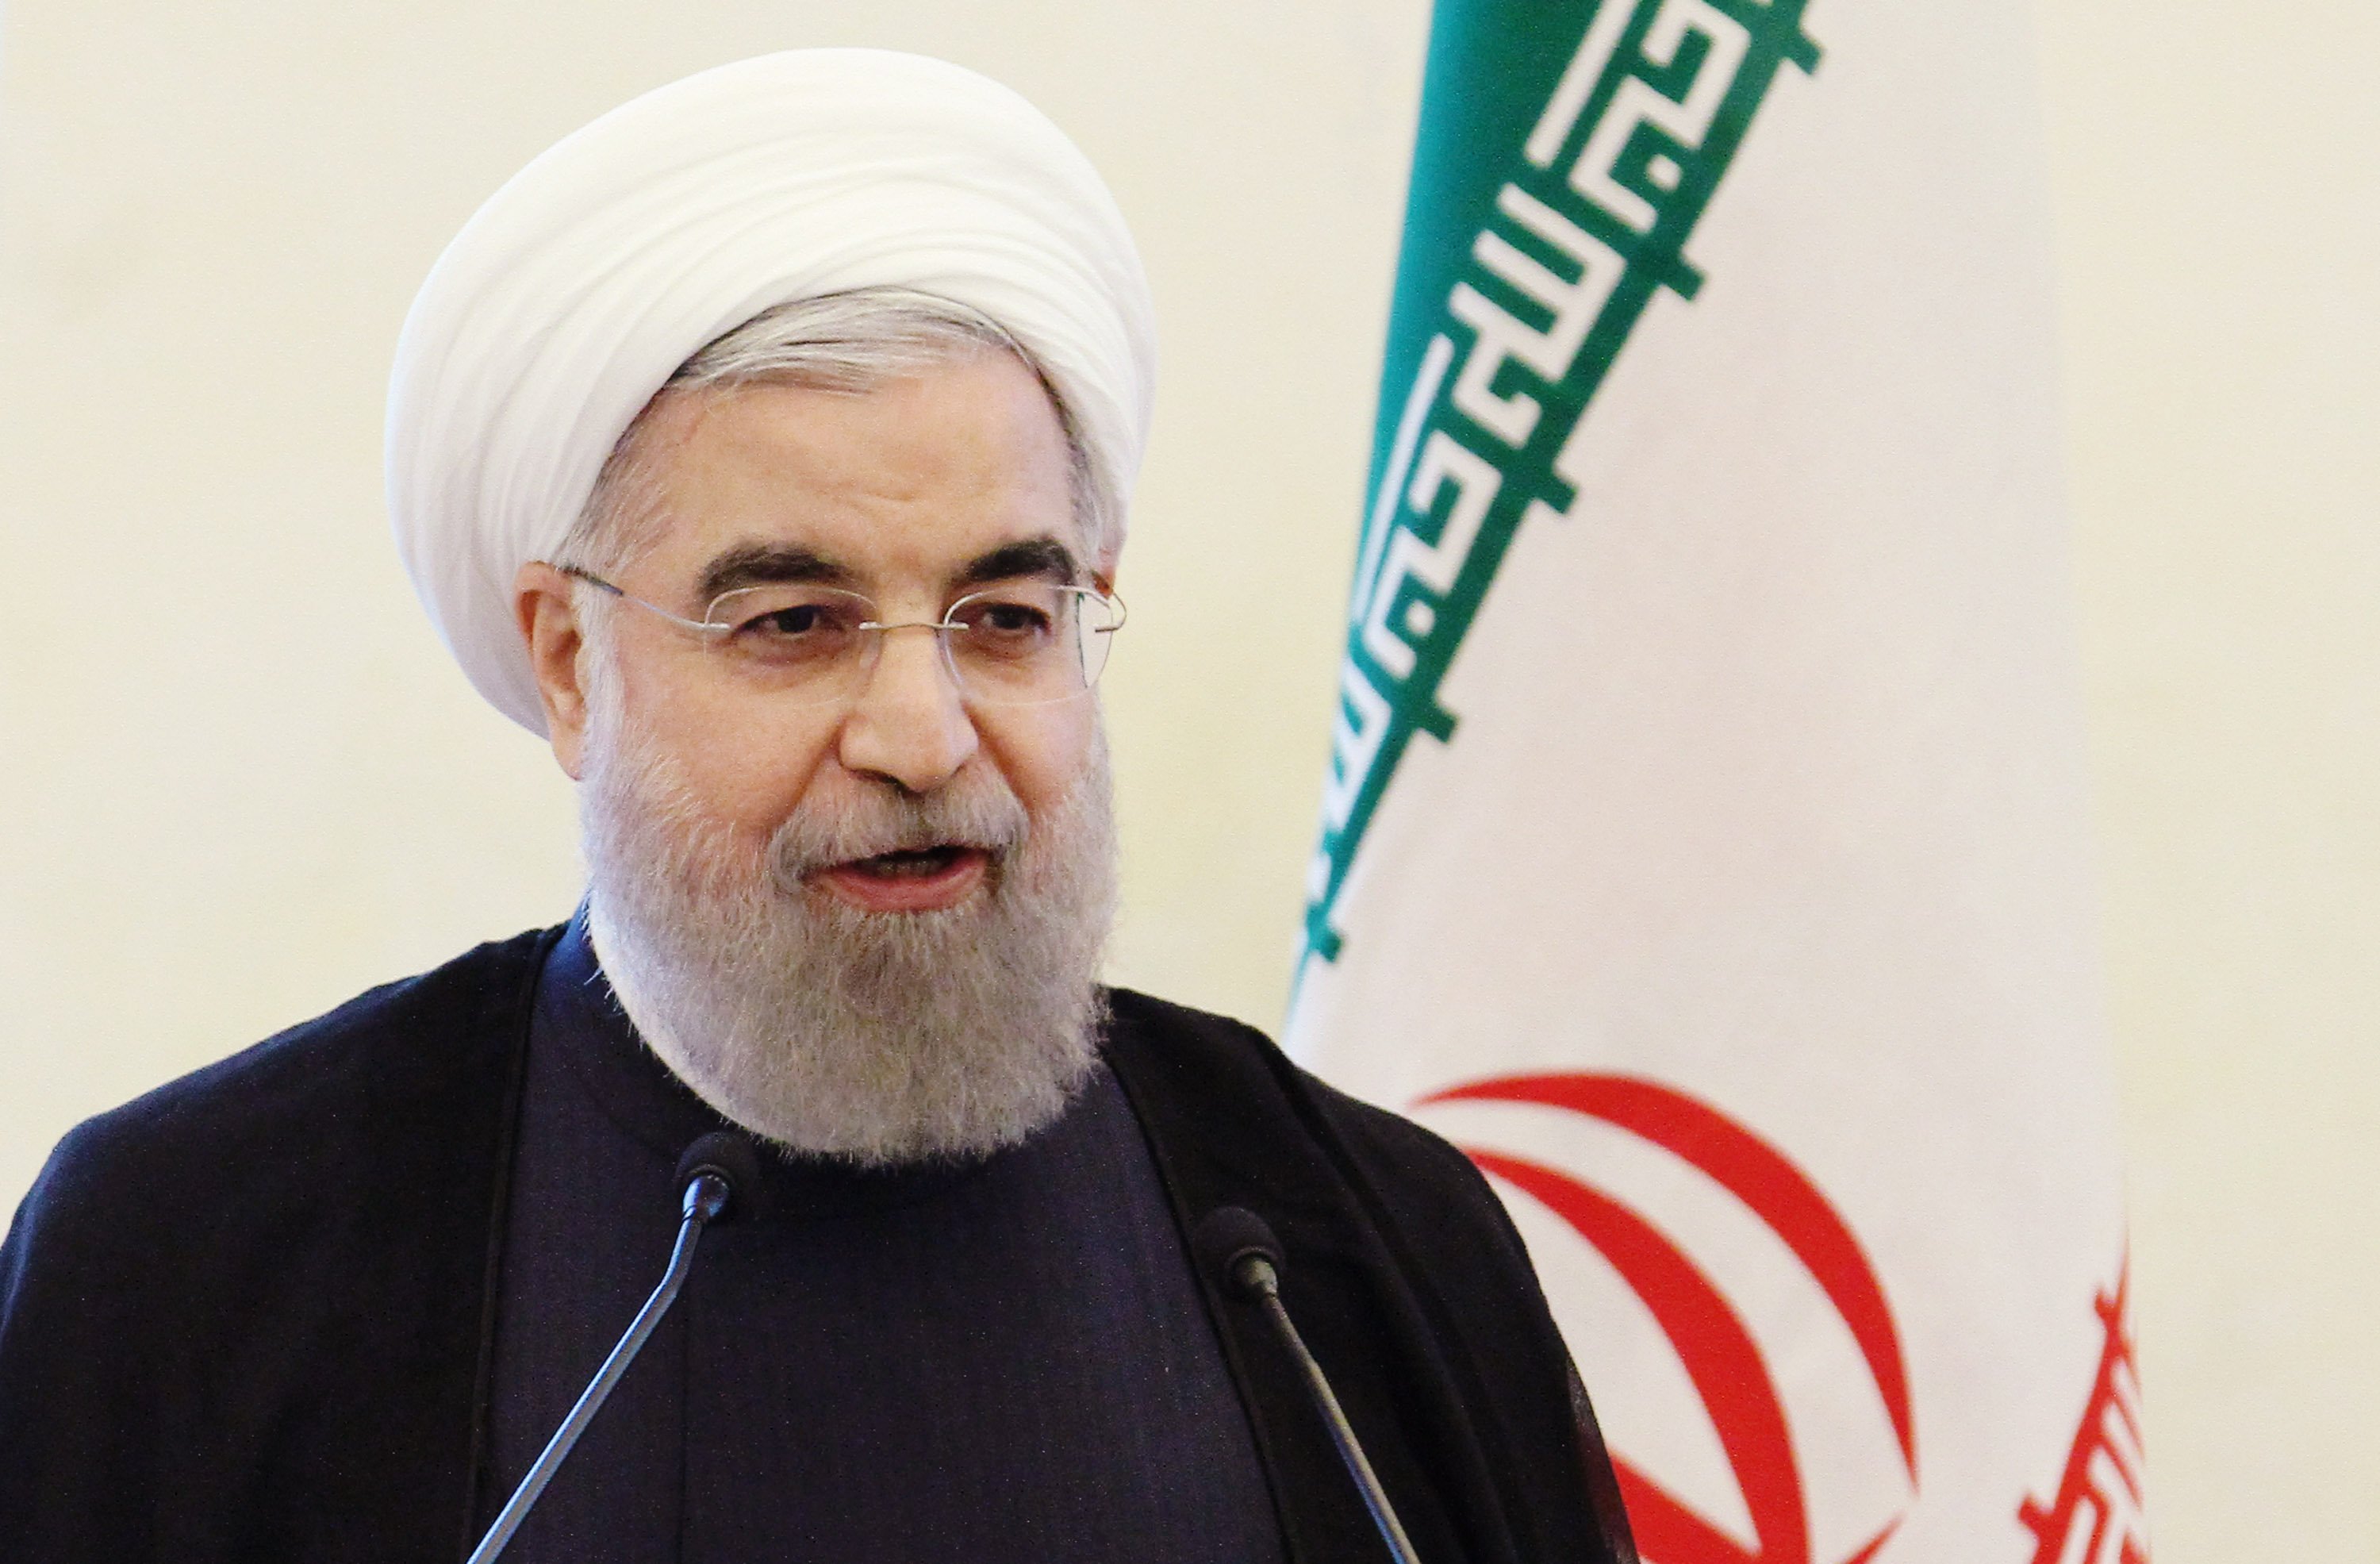 Presidente de la República Islámica de Irán envía mensaje de Año Nuevo al pueblo de Nicaragua